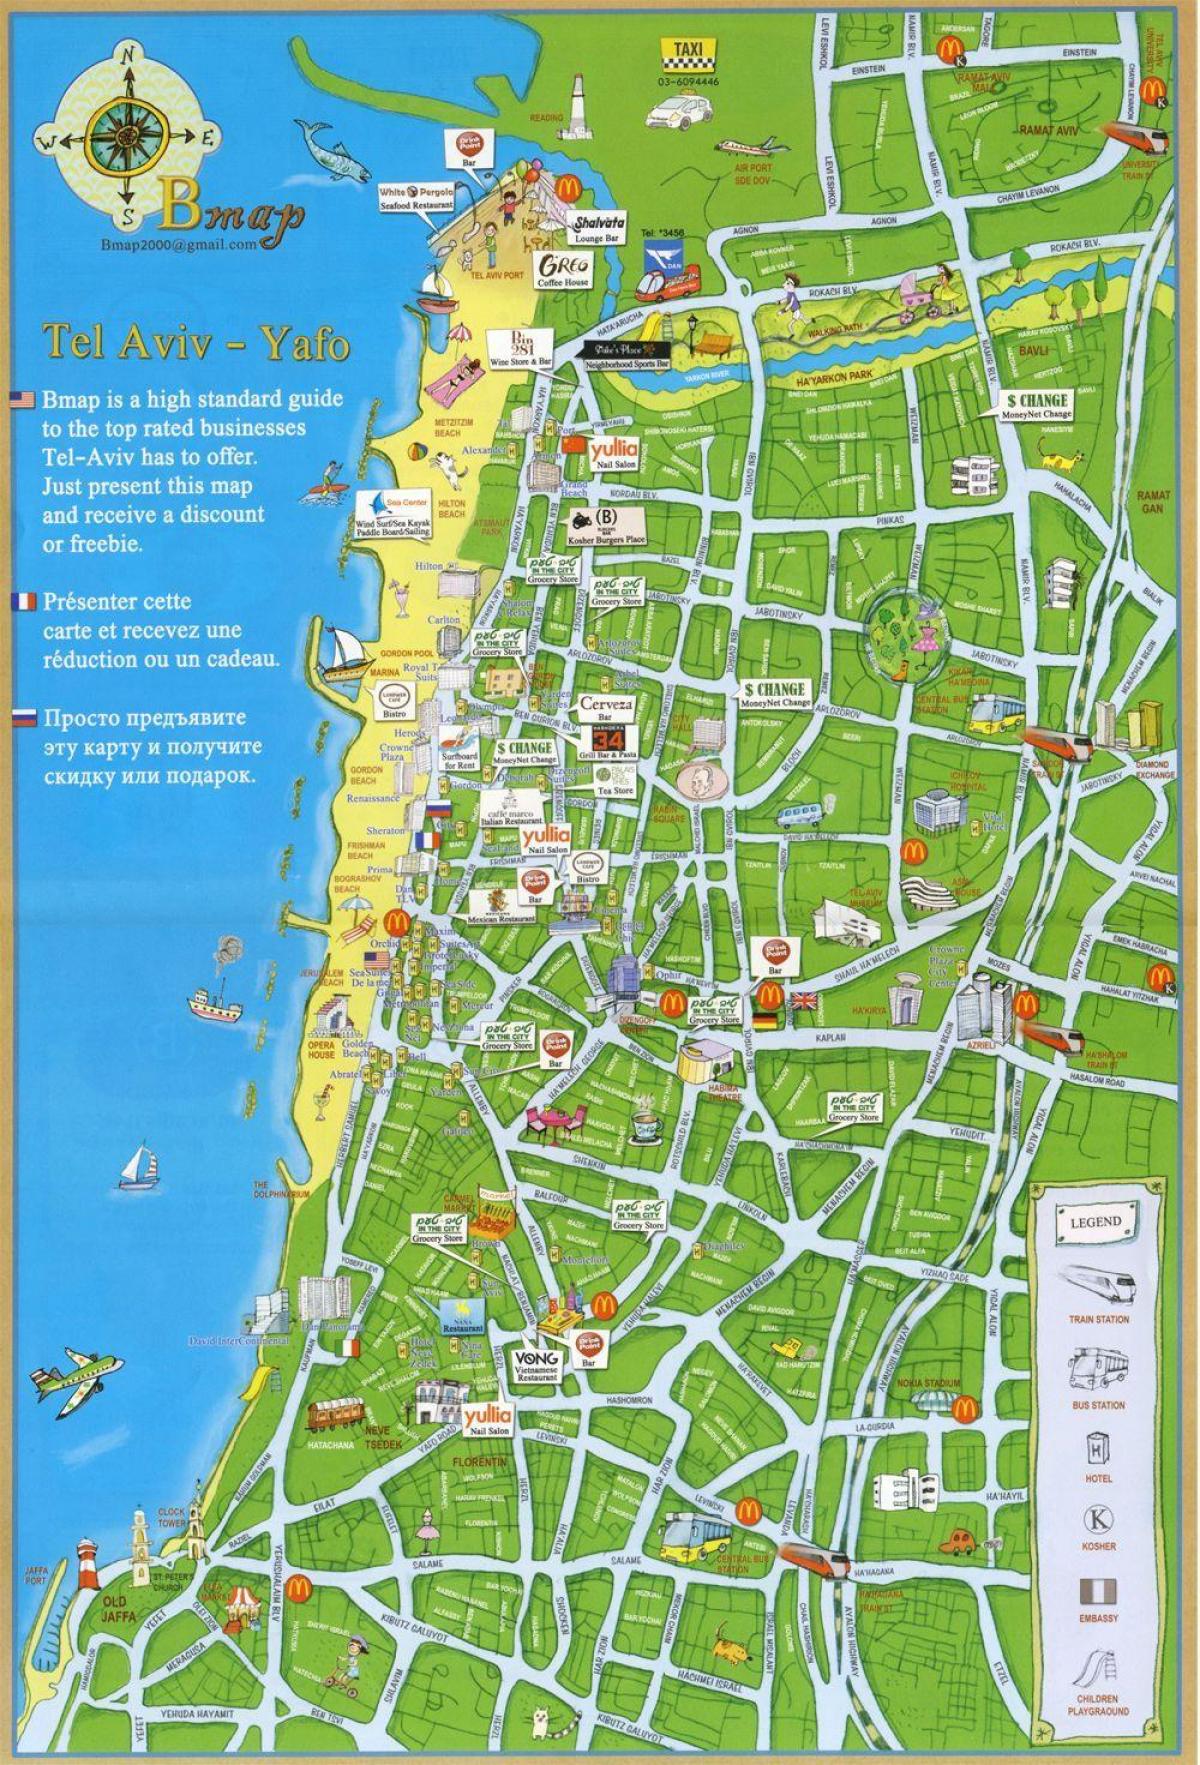 Tel Aviv staðir kort